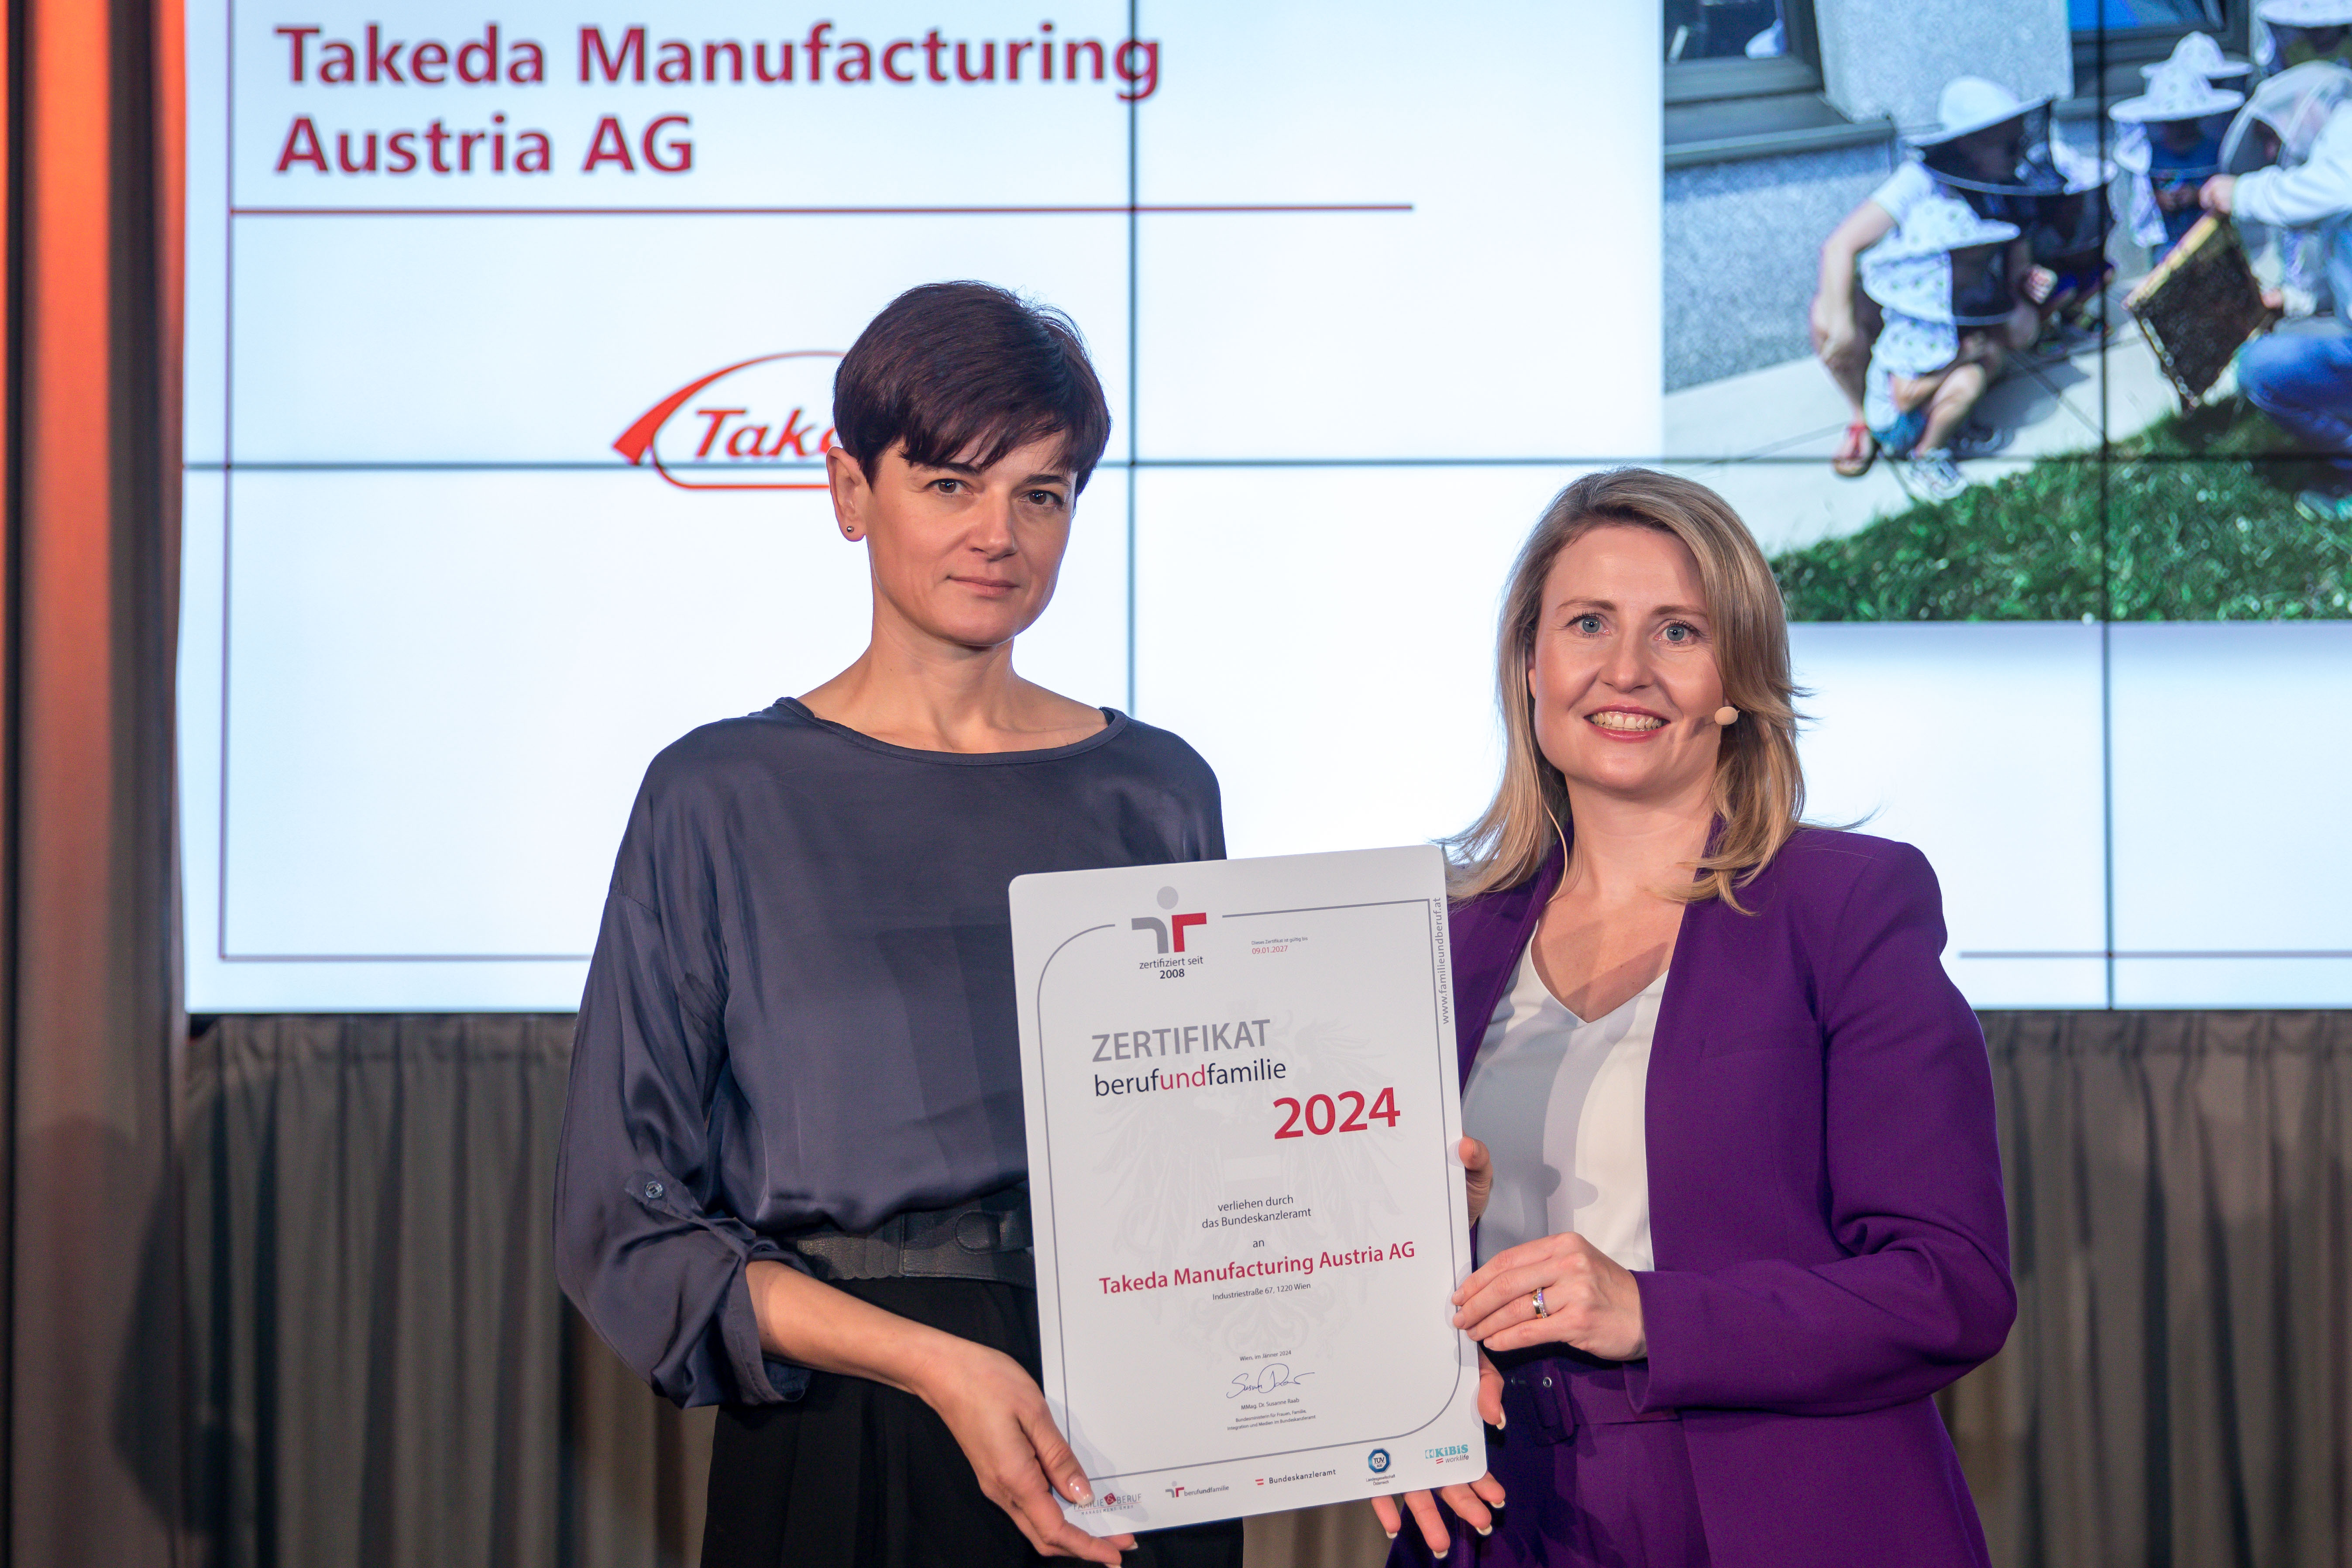 Takeda Manufacturing Austria AG